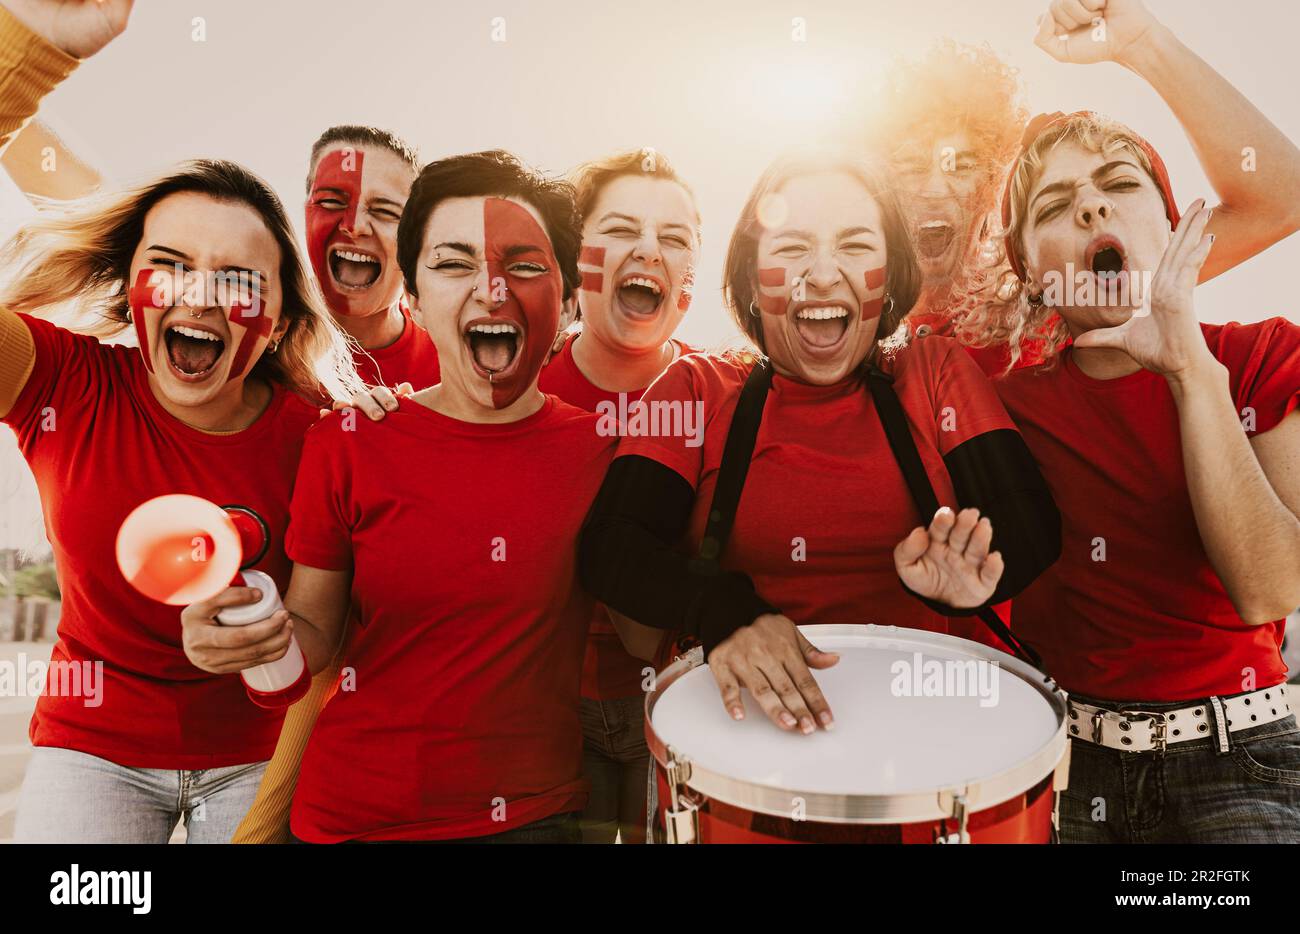 Frauen-Fußballfans, die Spaß dabei haben, ihre Lieblingsmannschaft anzufeuern – das Unterhaltungskonzept für Fußballsport Stockfoto